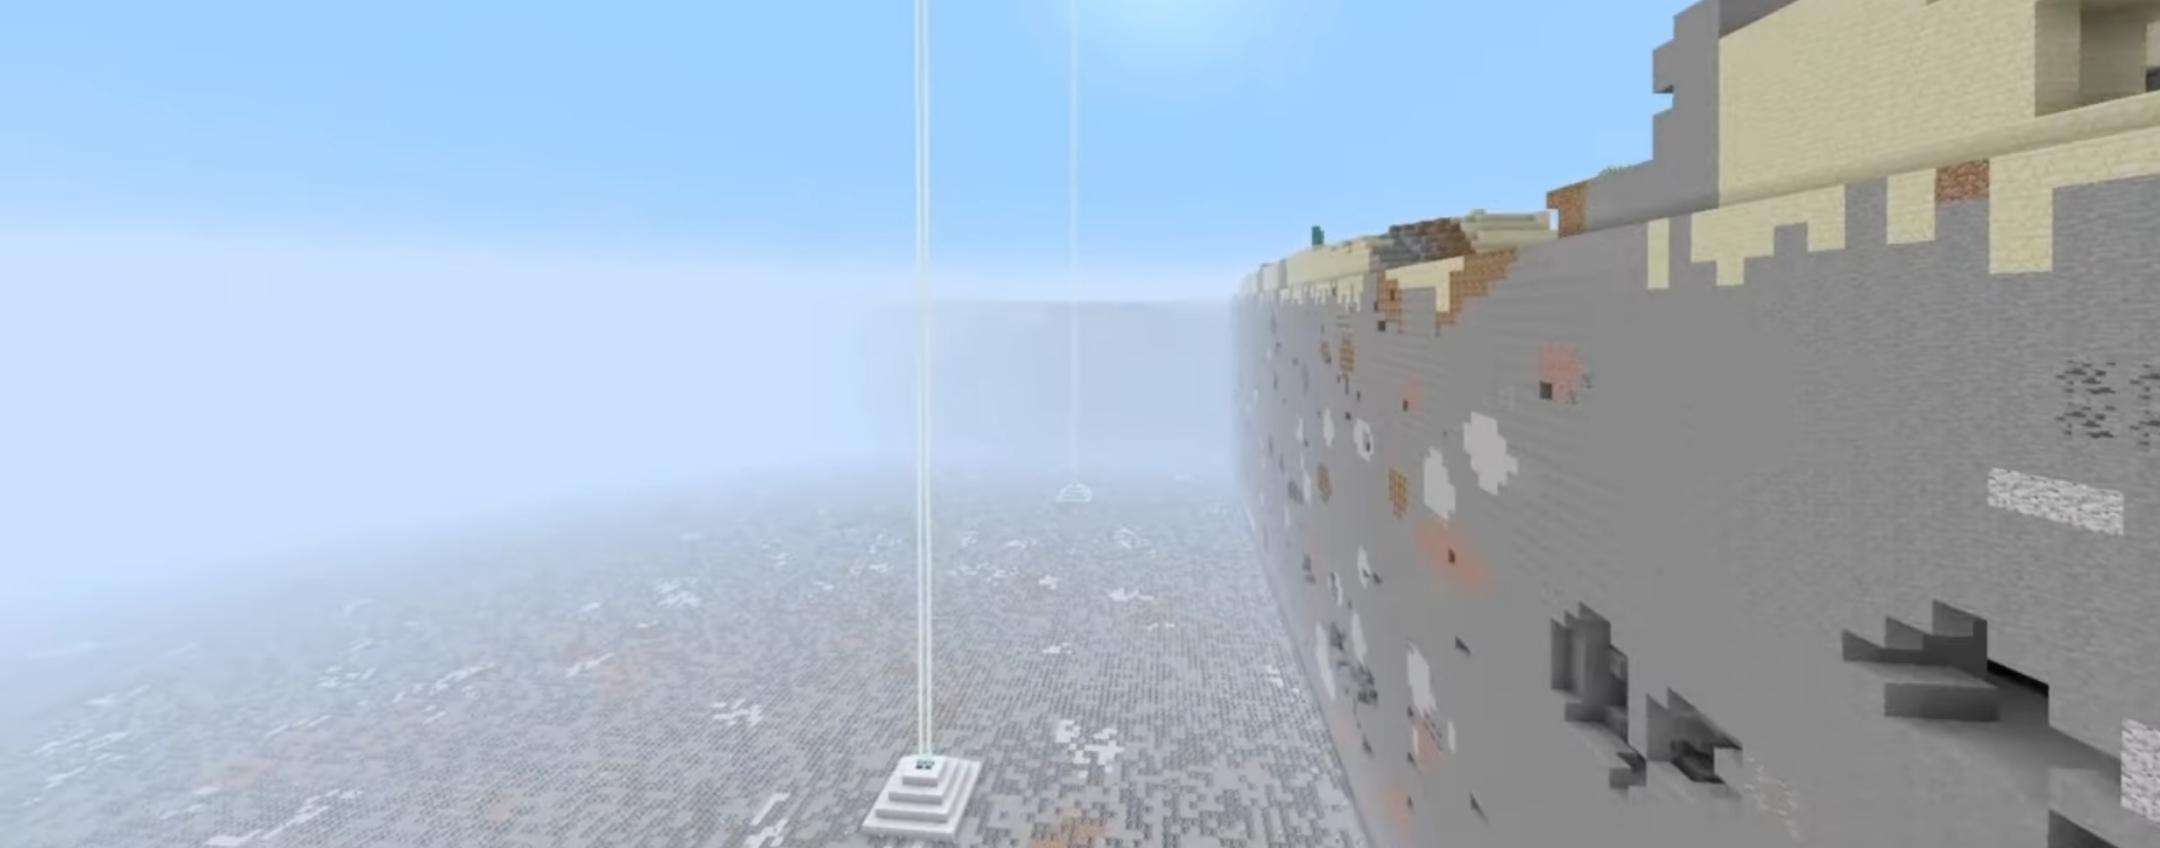 Minecraft: mancano pochi mesi alla distruzione totale di questo mondo